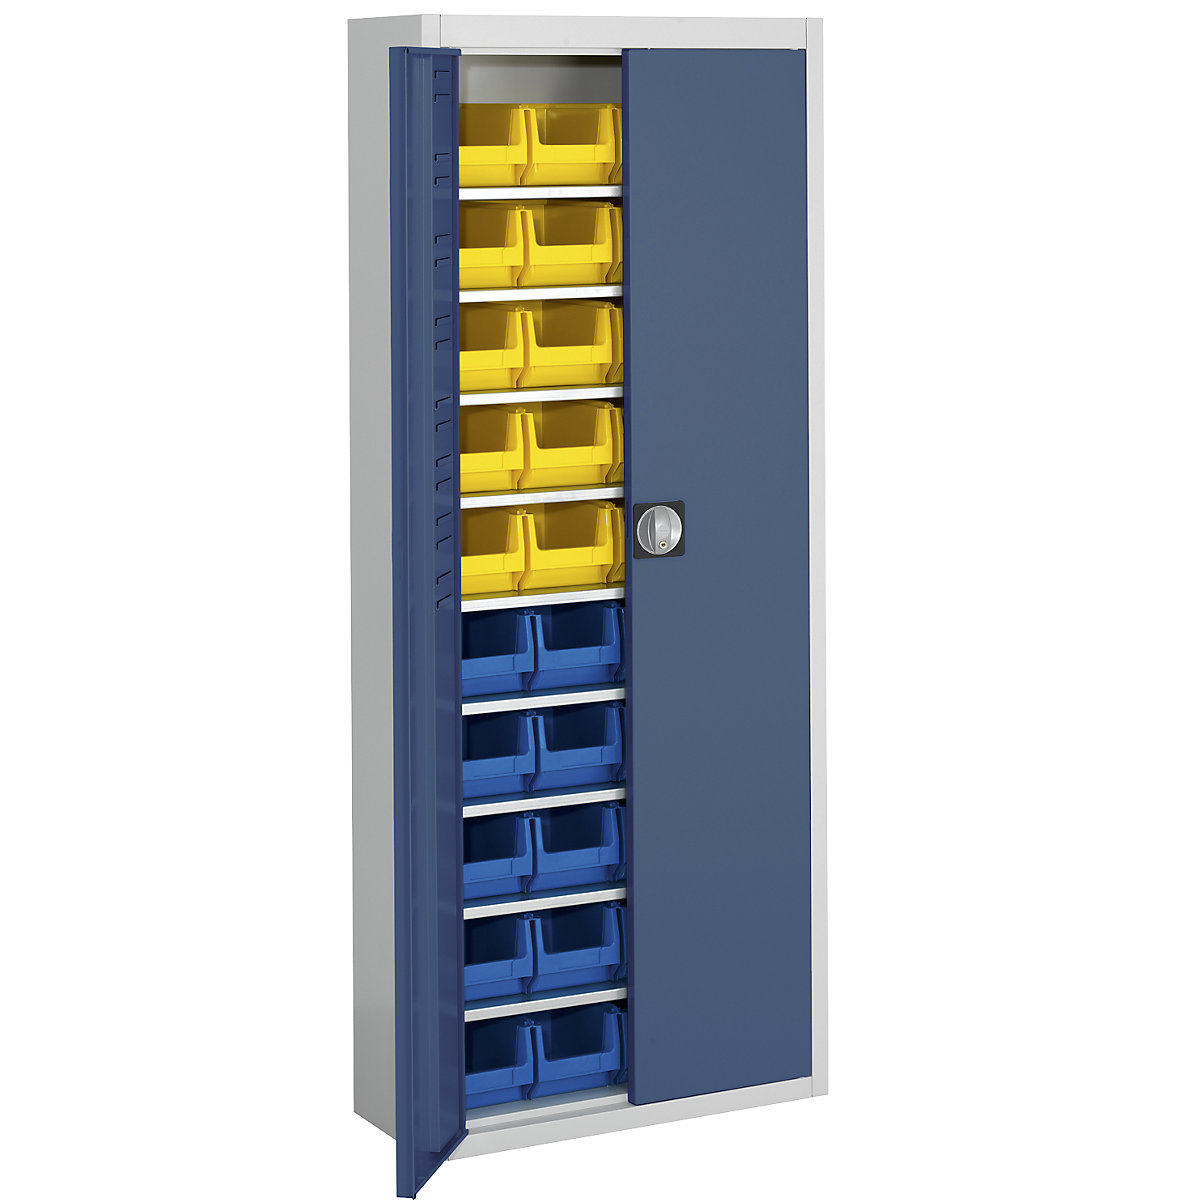 Skladišni ormar s otvorenim skladišnim kutijama – mauser, VxŠxD 1740 x 680 x 280 mm, u dvije boje, korpus u sivoj boji, vrata u plavoj boji, 40 kutija-9